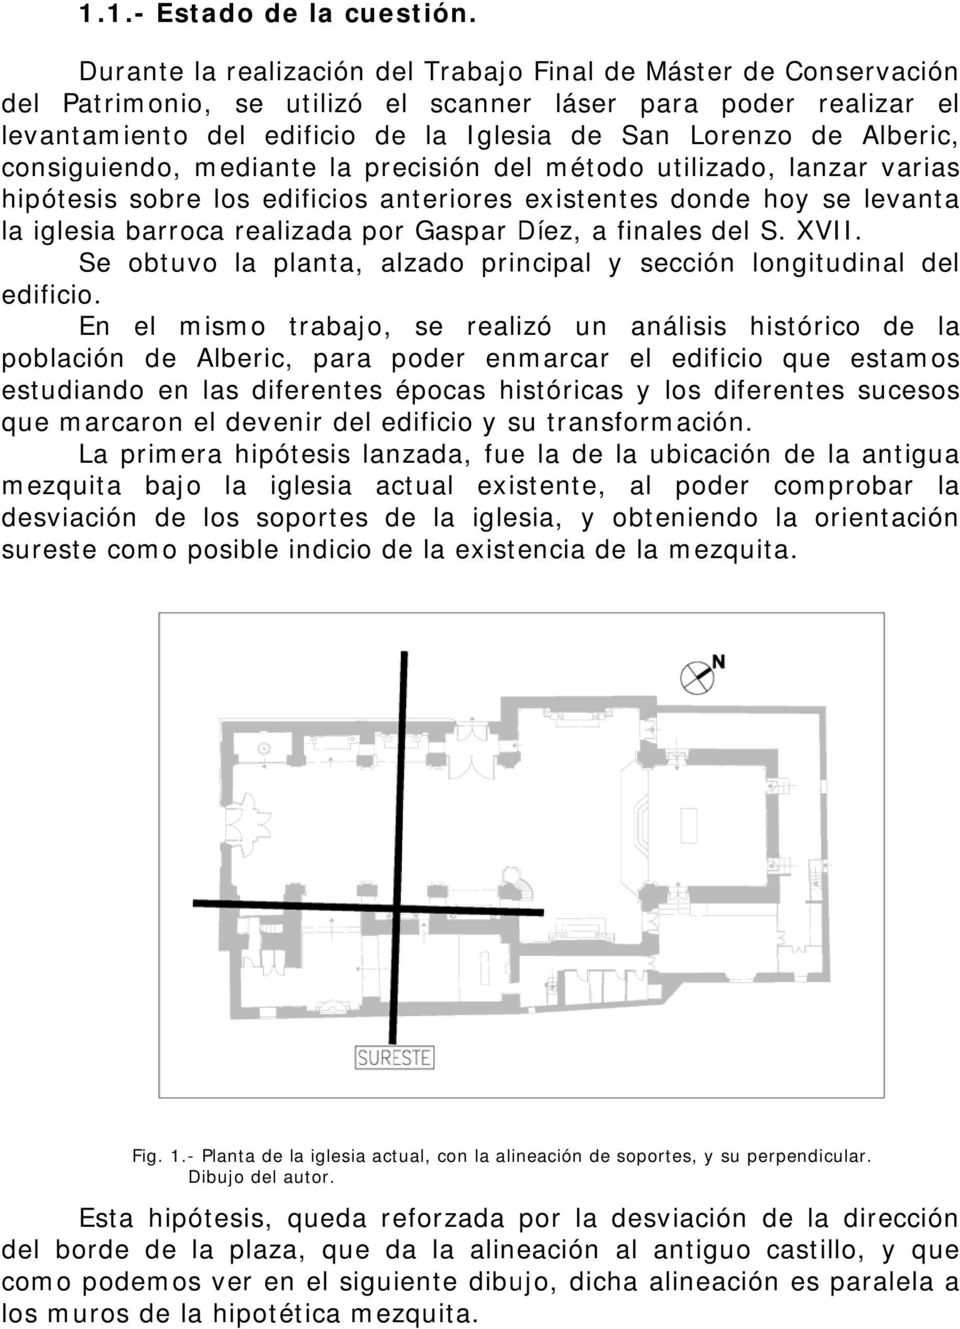 Alberic, consiguiendo, mediante la precisión del métodoo utilizado, lanzar varias hipótesis sobre los edificios anteriores existentes donde hoy se levanta la iglesia barroca realizada por Gaspar